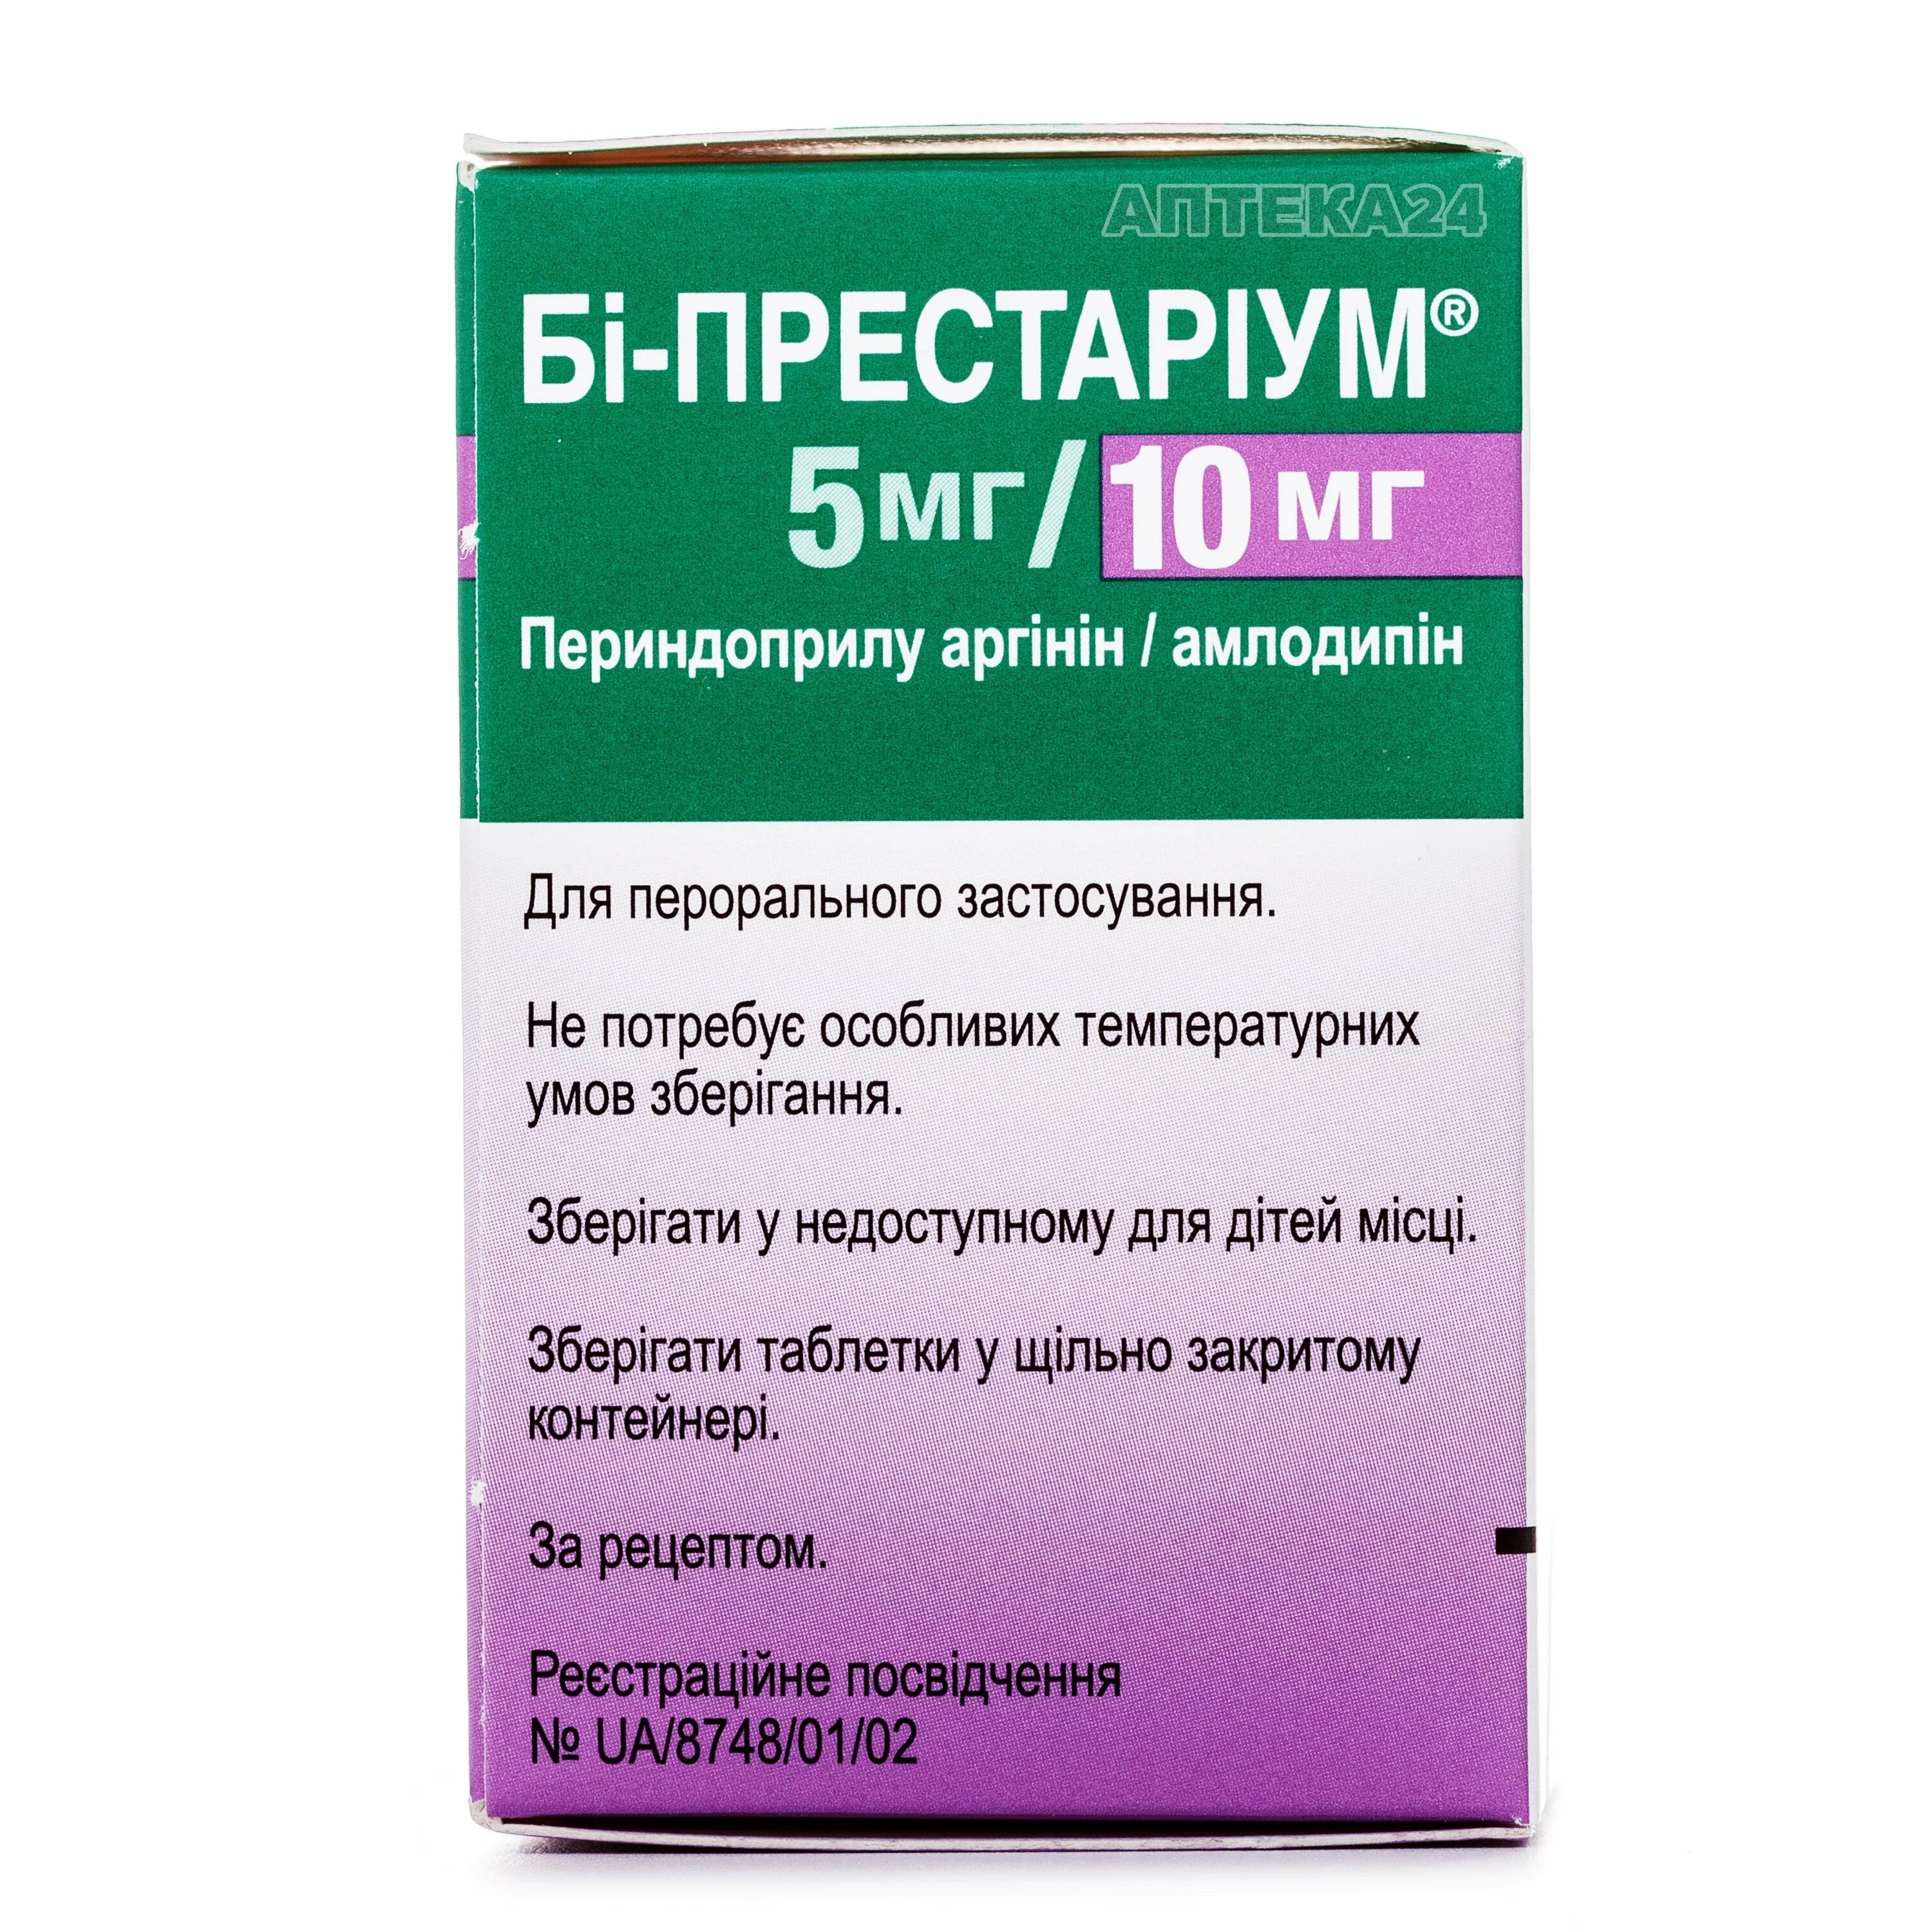 Аналог престариума 5 мг. Престариум 5 мг таблетки. Престариум 2,5 мг таблетки. Престариум 10 мг таблетки. Ко- Престариум 5мг+10мг.